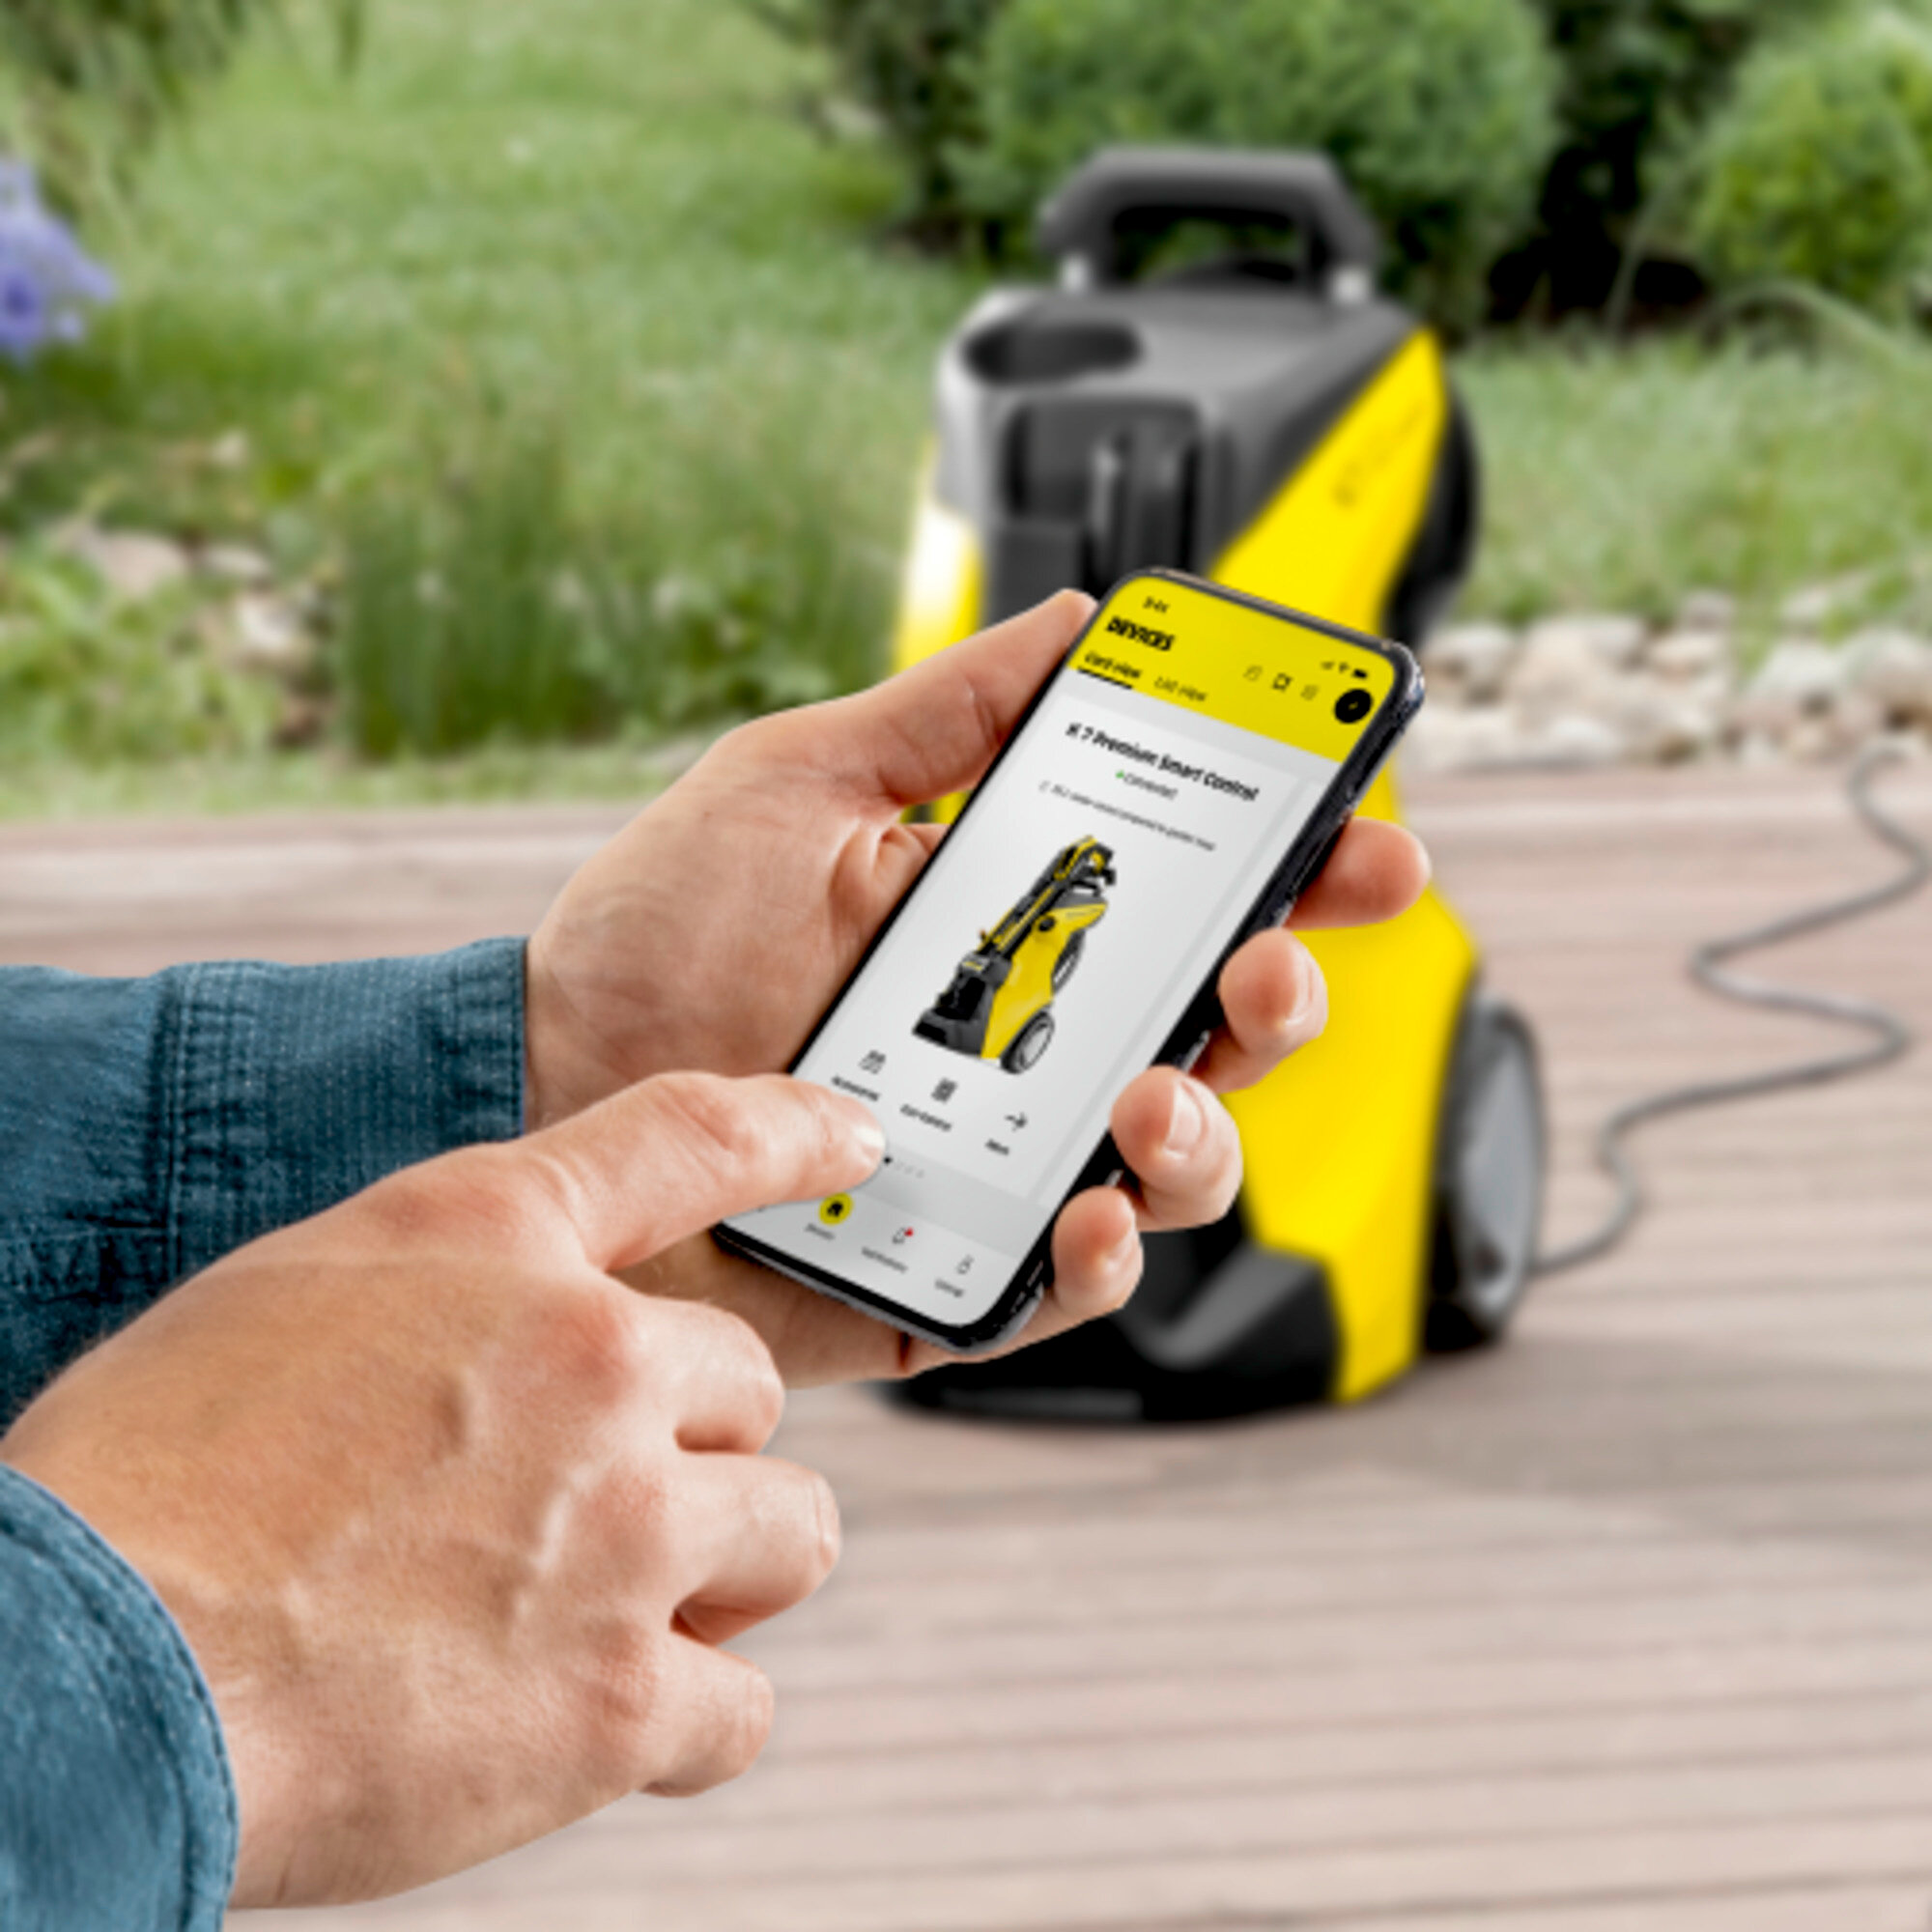 Idropulitrice Idropulitrice K 5 Premium Smart Control: Connessione Bluetooth per l'applicazione Home & Garden